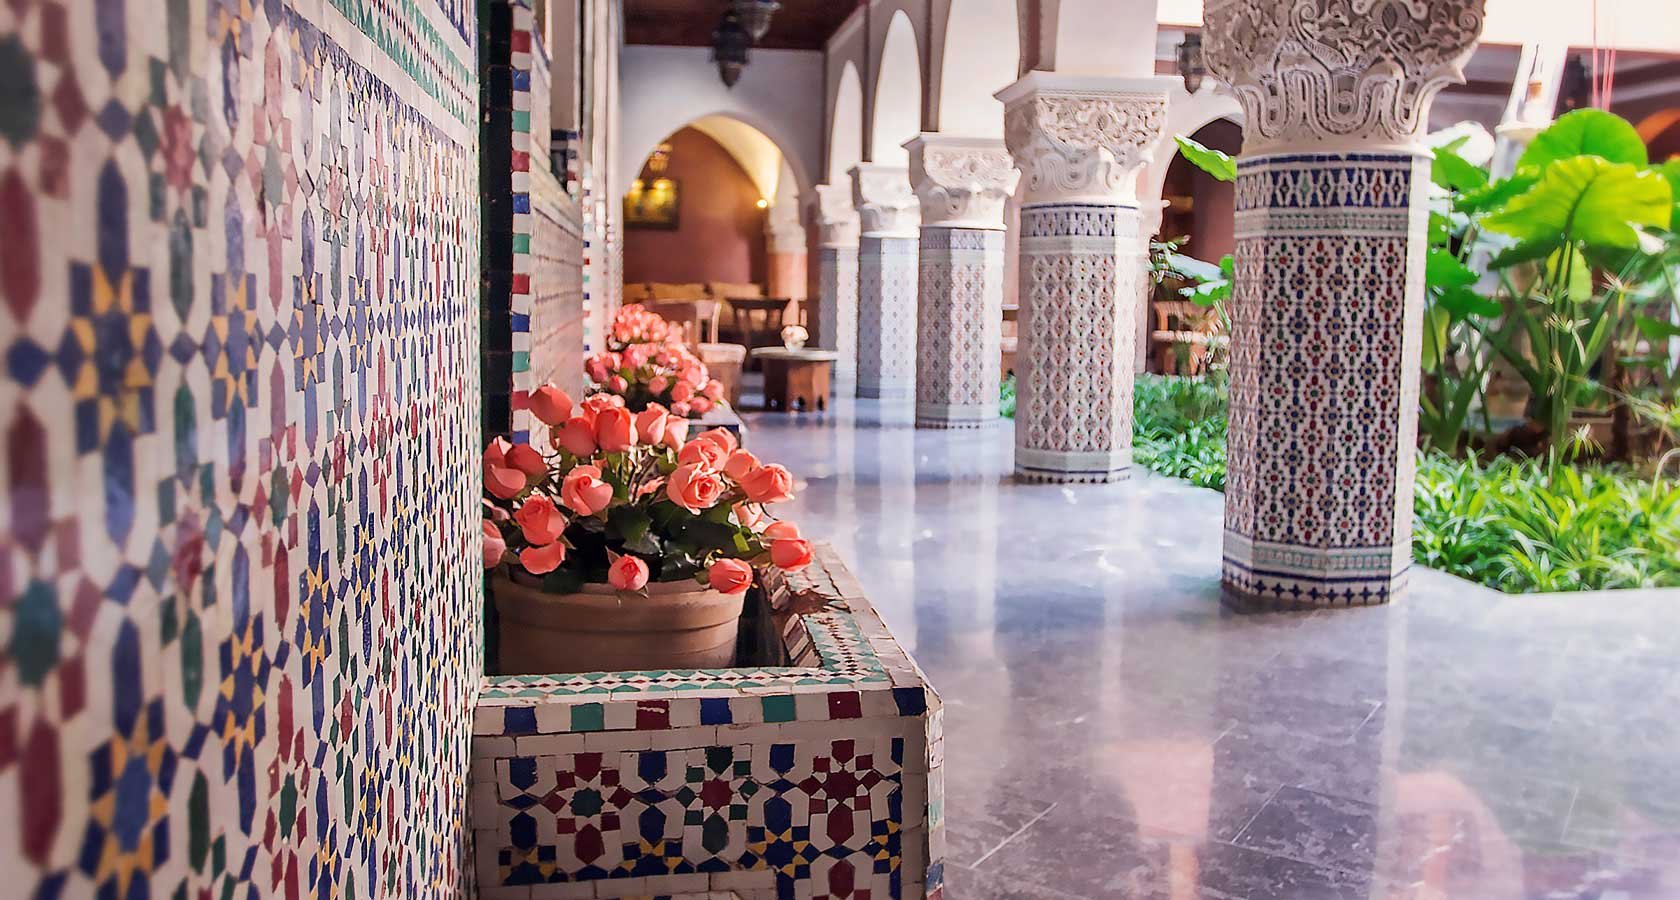 Марокко внутренний дворик Маракеш